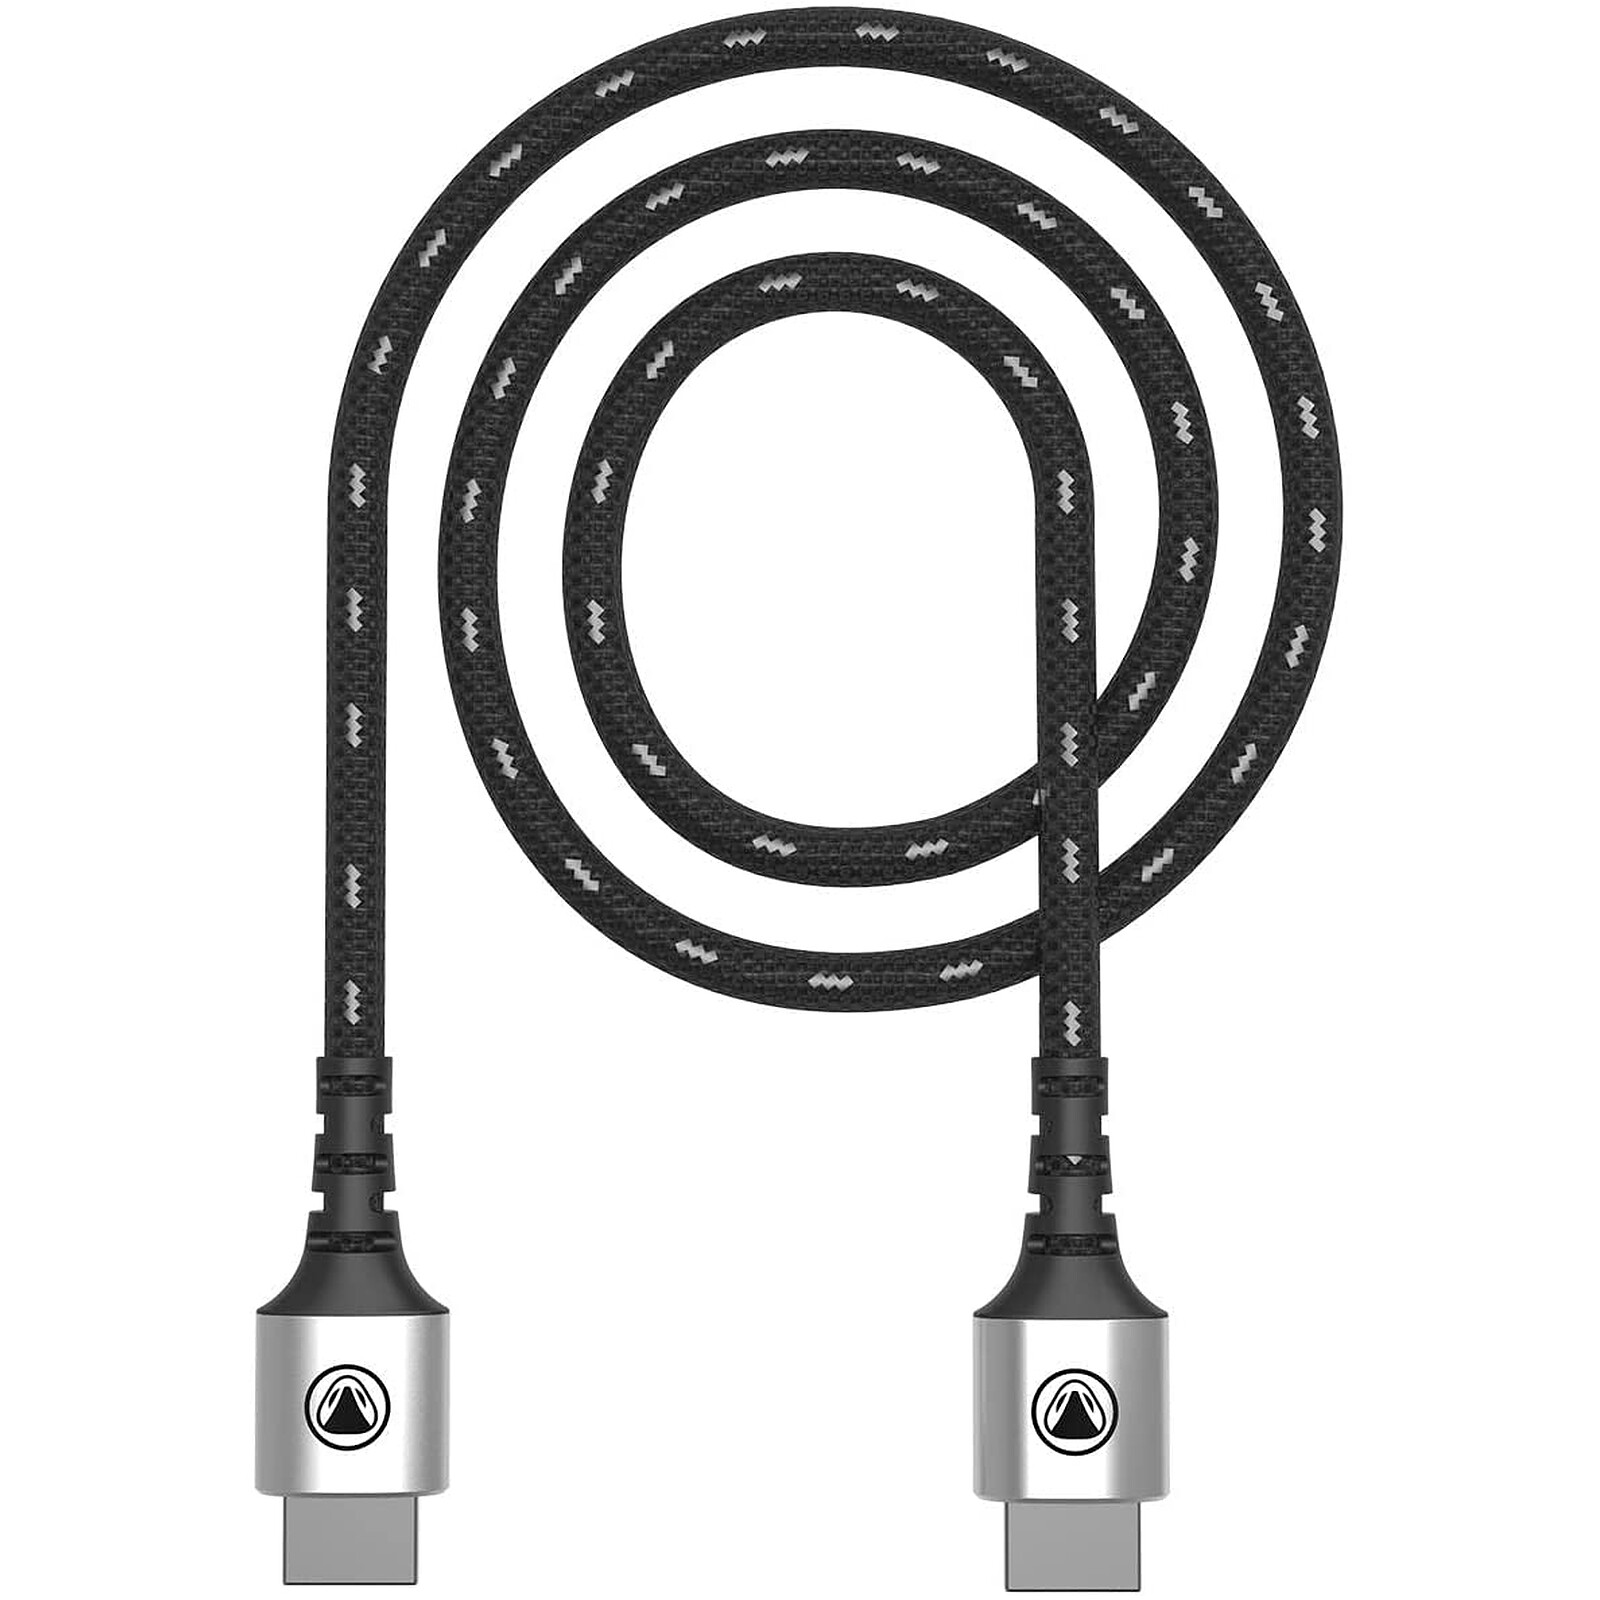 snakebyte - Câble HDMI 2.1 PlayStation 5 de 2 mètres - Accessoires PS5 -  LDLC